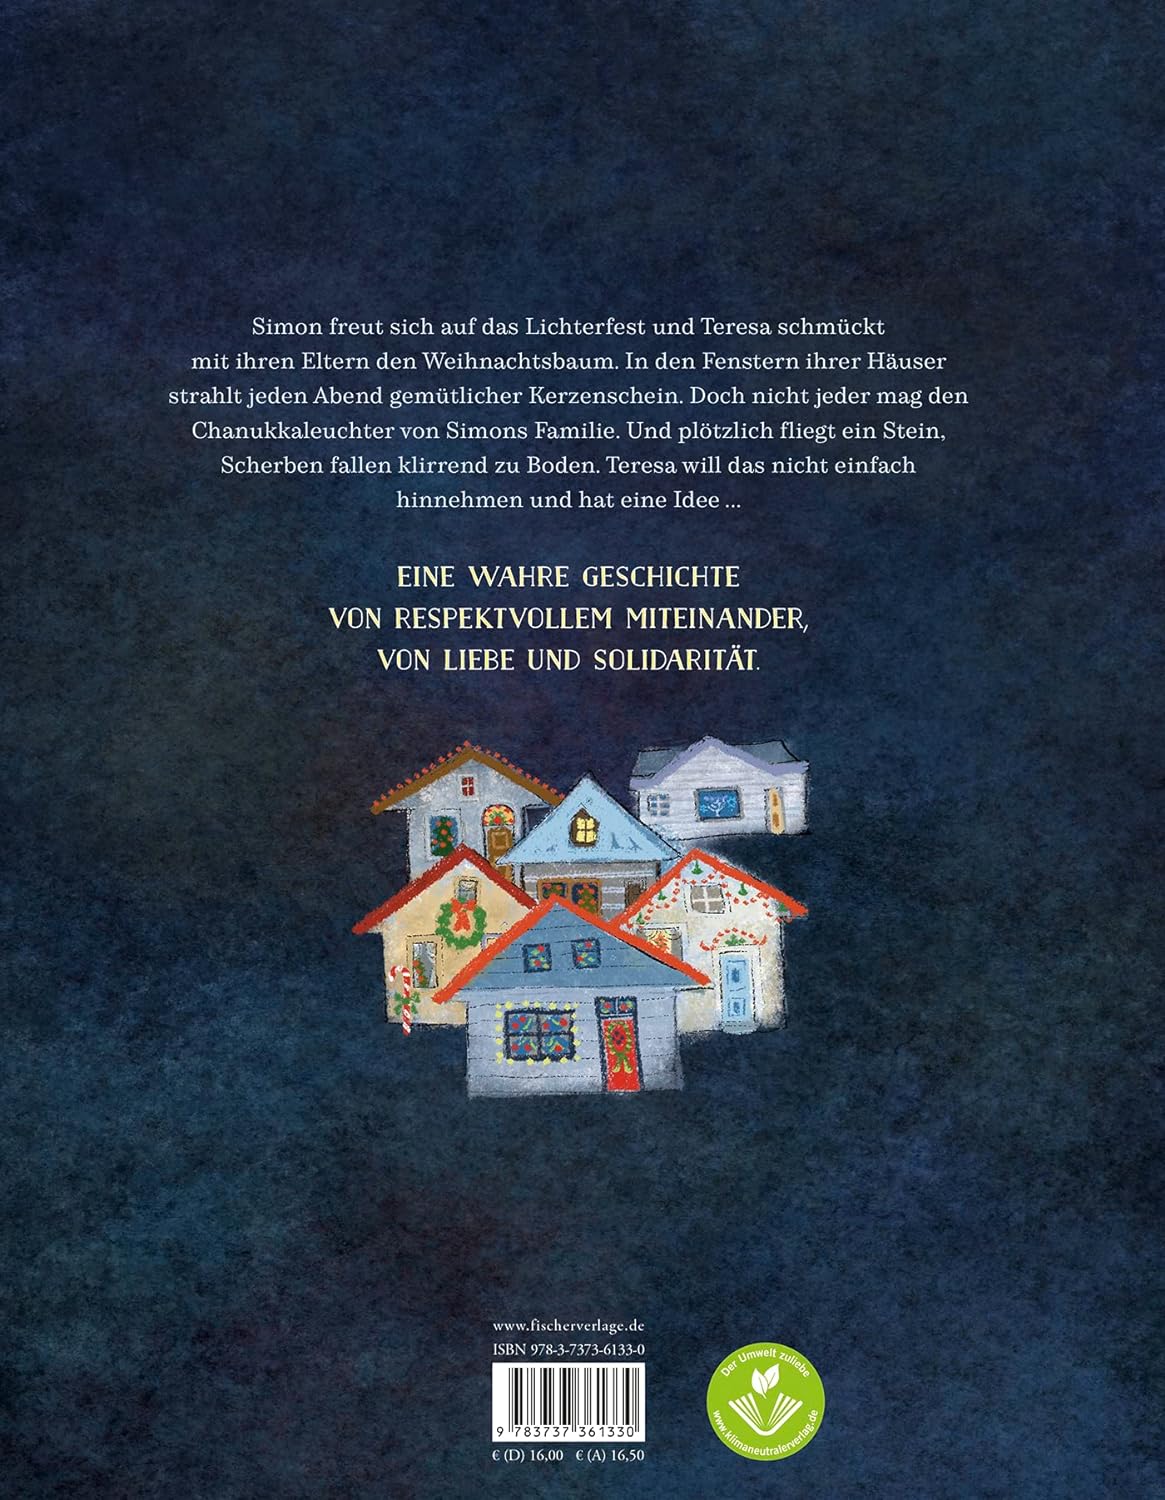 Rückseite von dem Kinderbuch Für jeden ein Licht. Hier sind graphisch kleine bunte Häuser illustriert. Der Hintergrund ist dunkelblau.